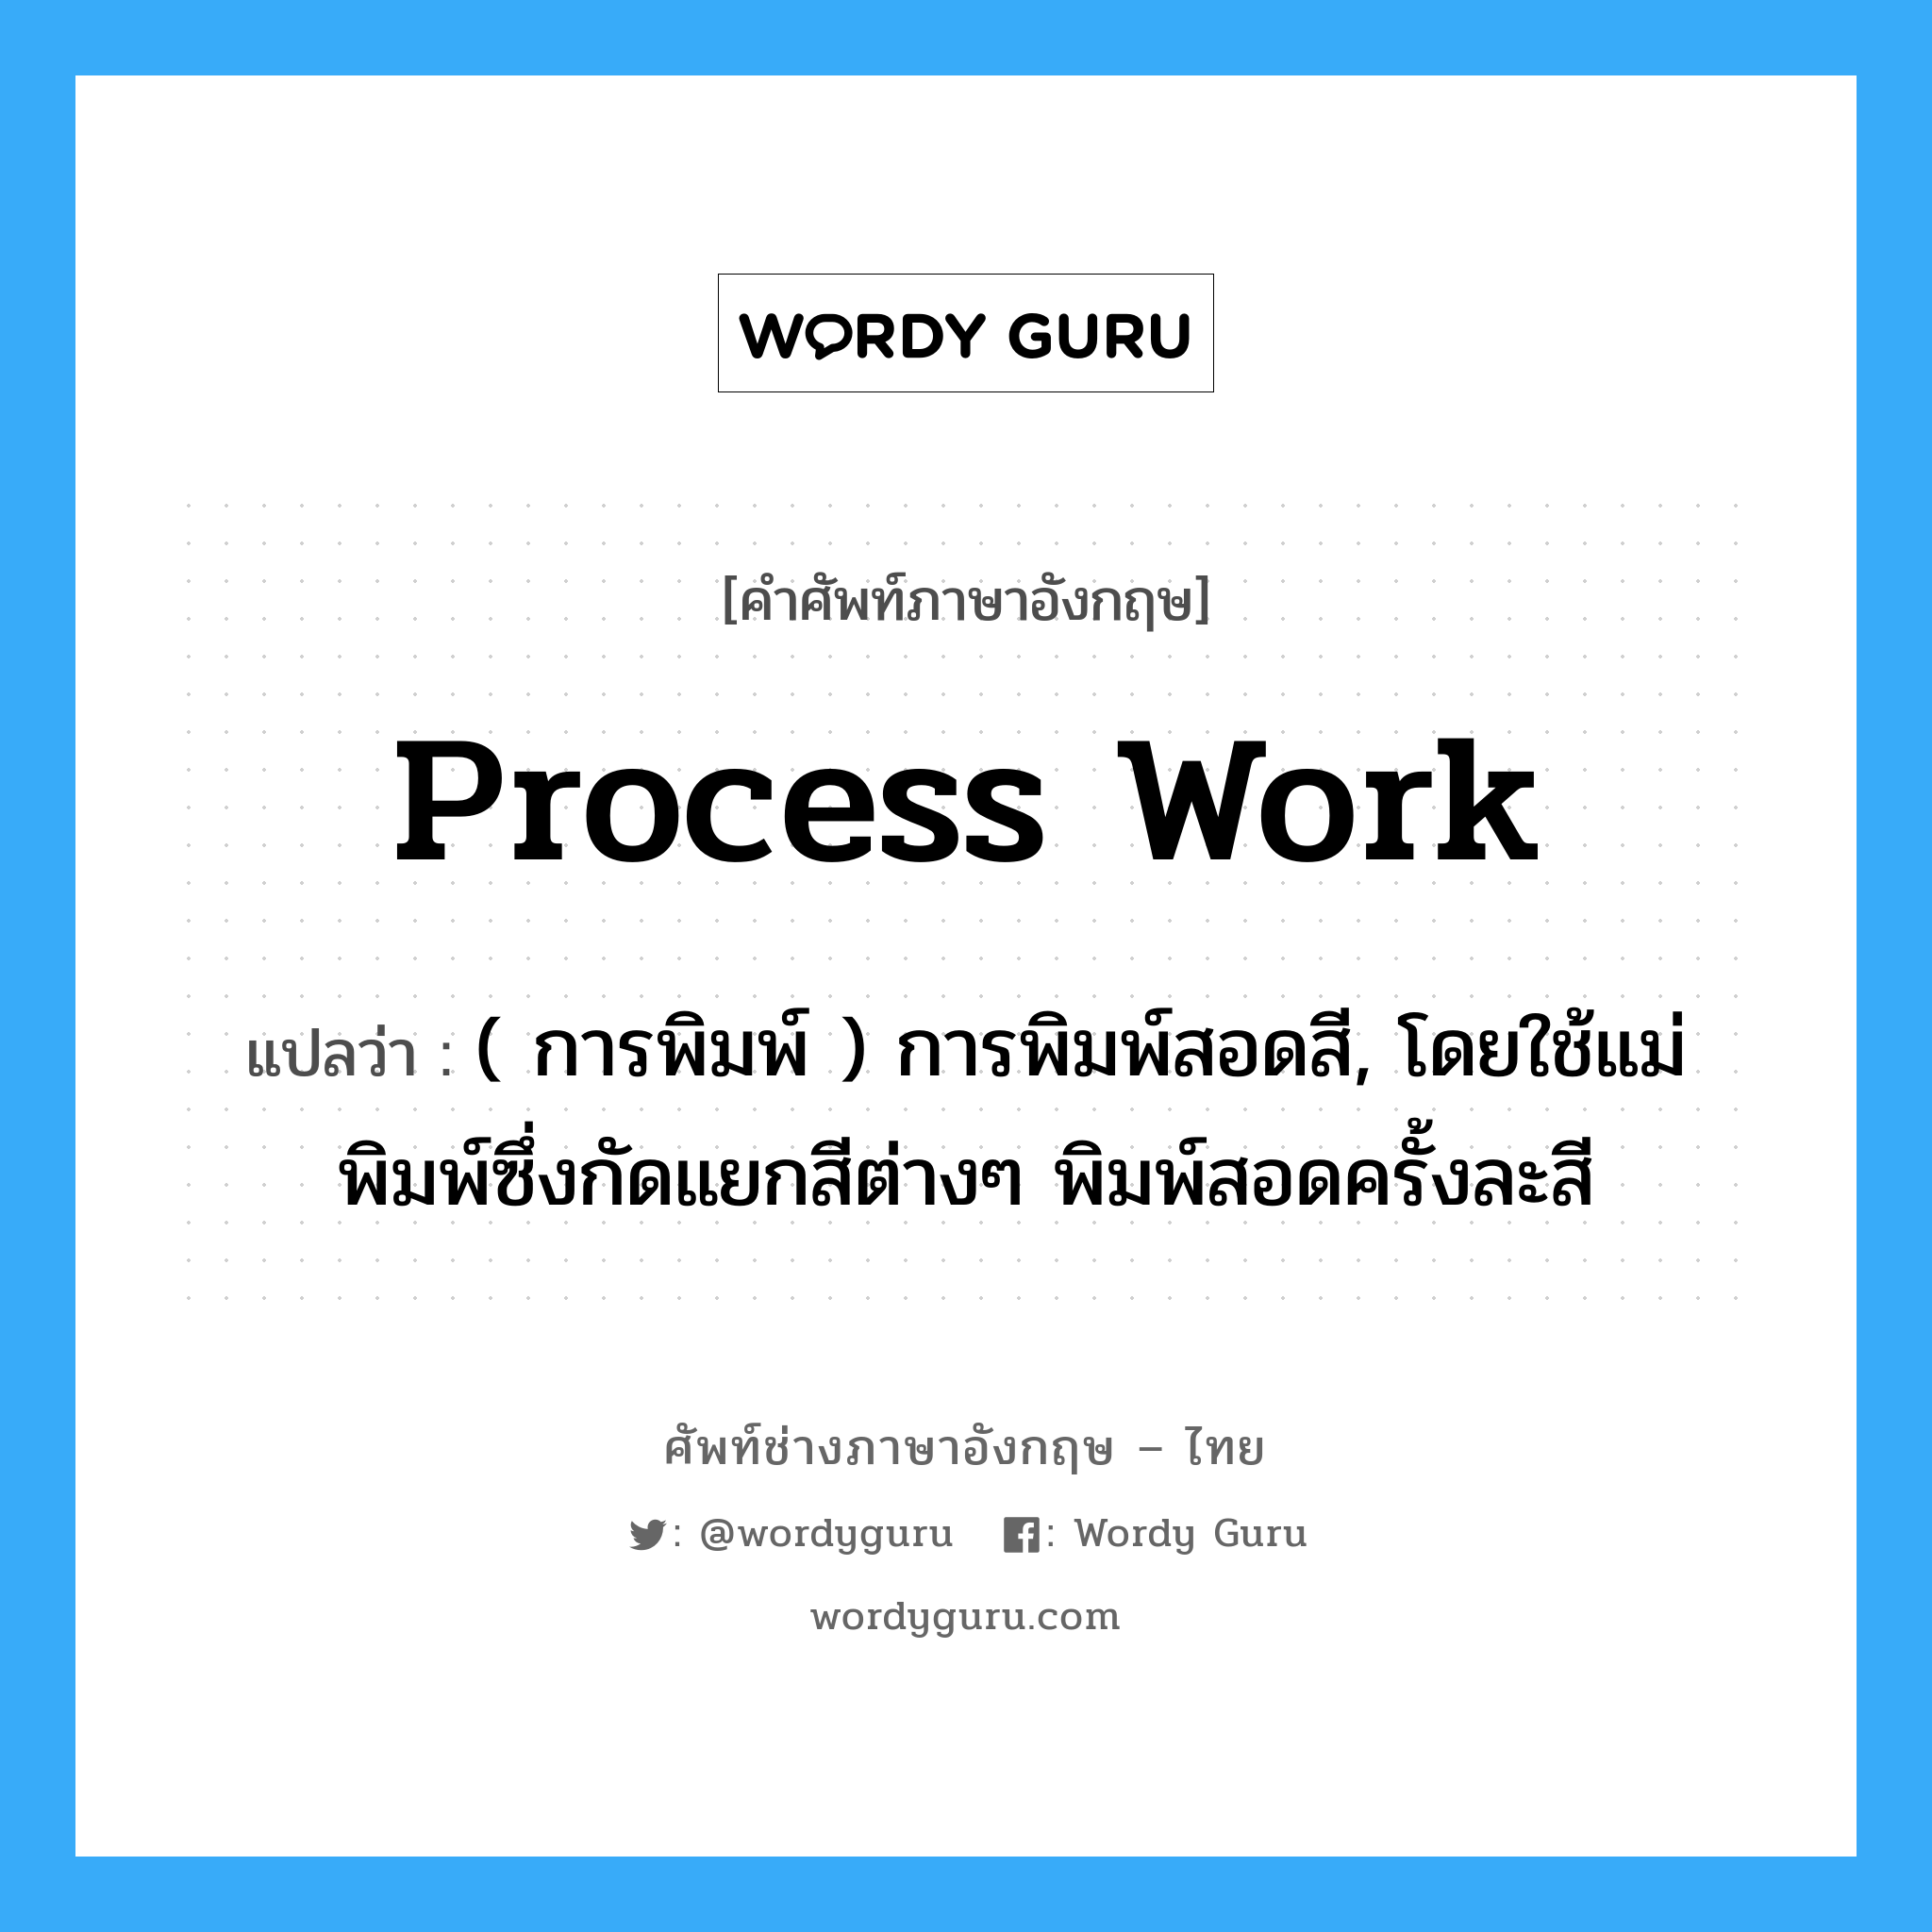 process work แปลว่า?, คำศัพท์ช่างภาษาอังกฤษ - ไทย process work คำศัพท์ภาษาอังกฤษ process work แปลว่า ( การพิมพ์ ) การพิมพ์สอดสี, โดยใช้แม่พิมพ์ซึ่งกัดแยกสีต่างๆ พิมพ์สอดครั้งละสี